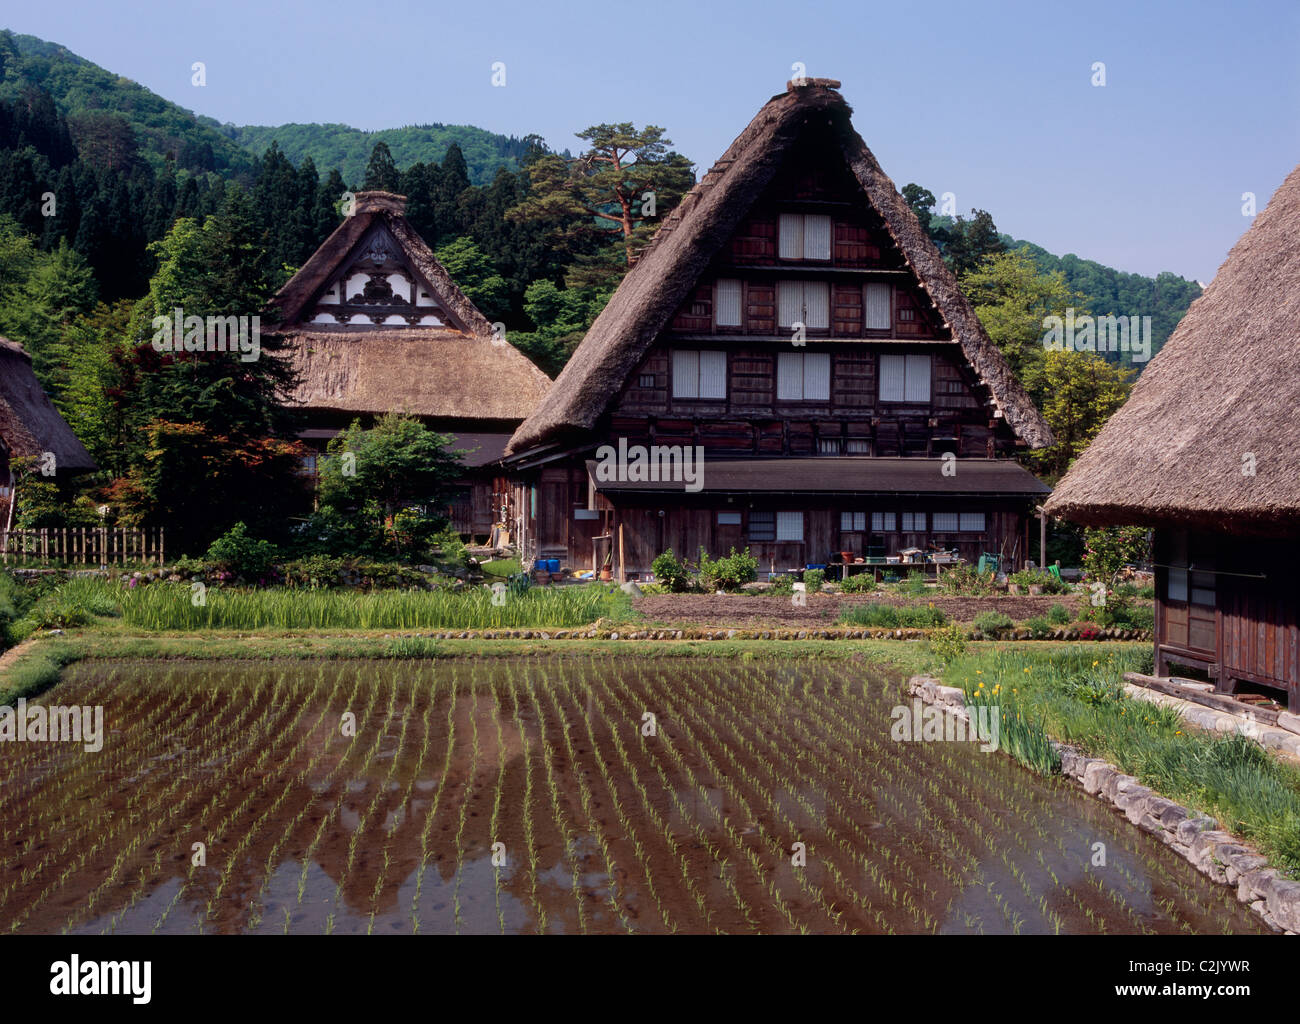 Village and Rice Paddy at Shirakawa-go, Shirakawa, Ono, Gifu, Japan Stock Photo